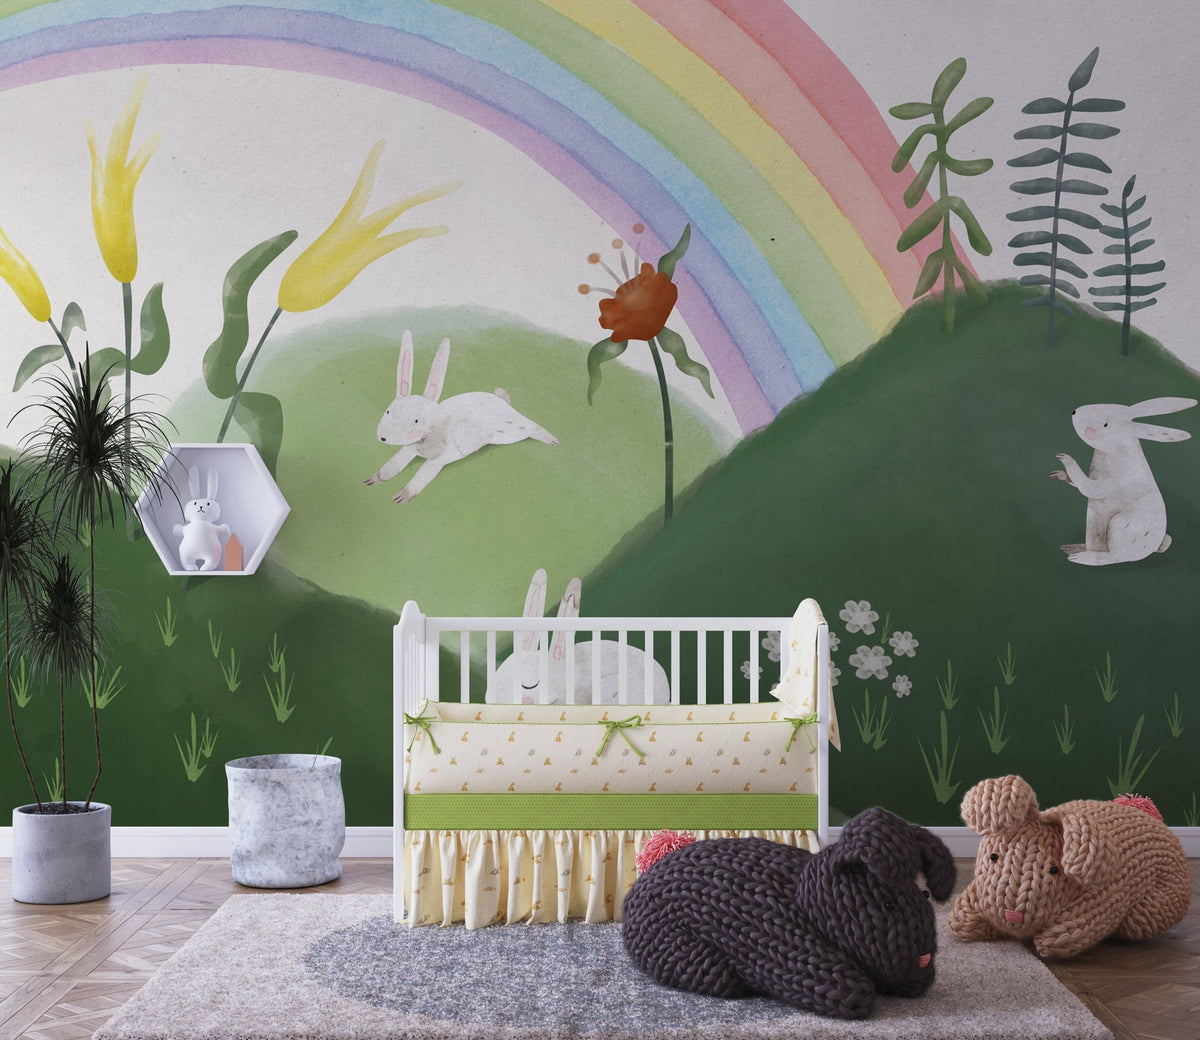 Kaninchen im Garten – Tapetenwandbild für das Kinderzimmer